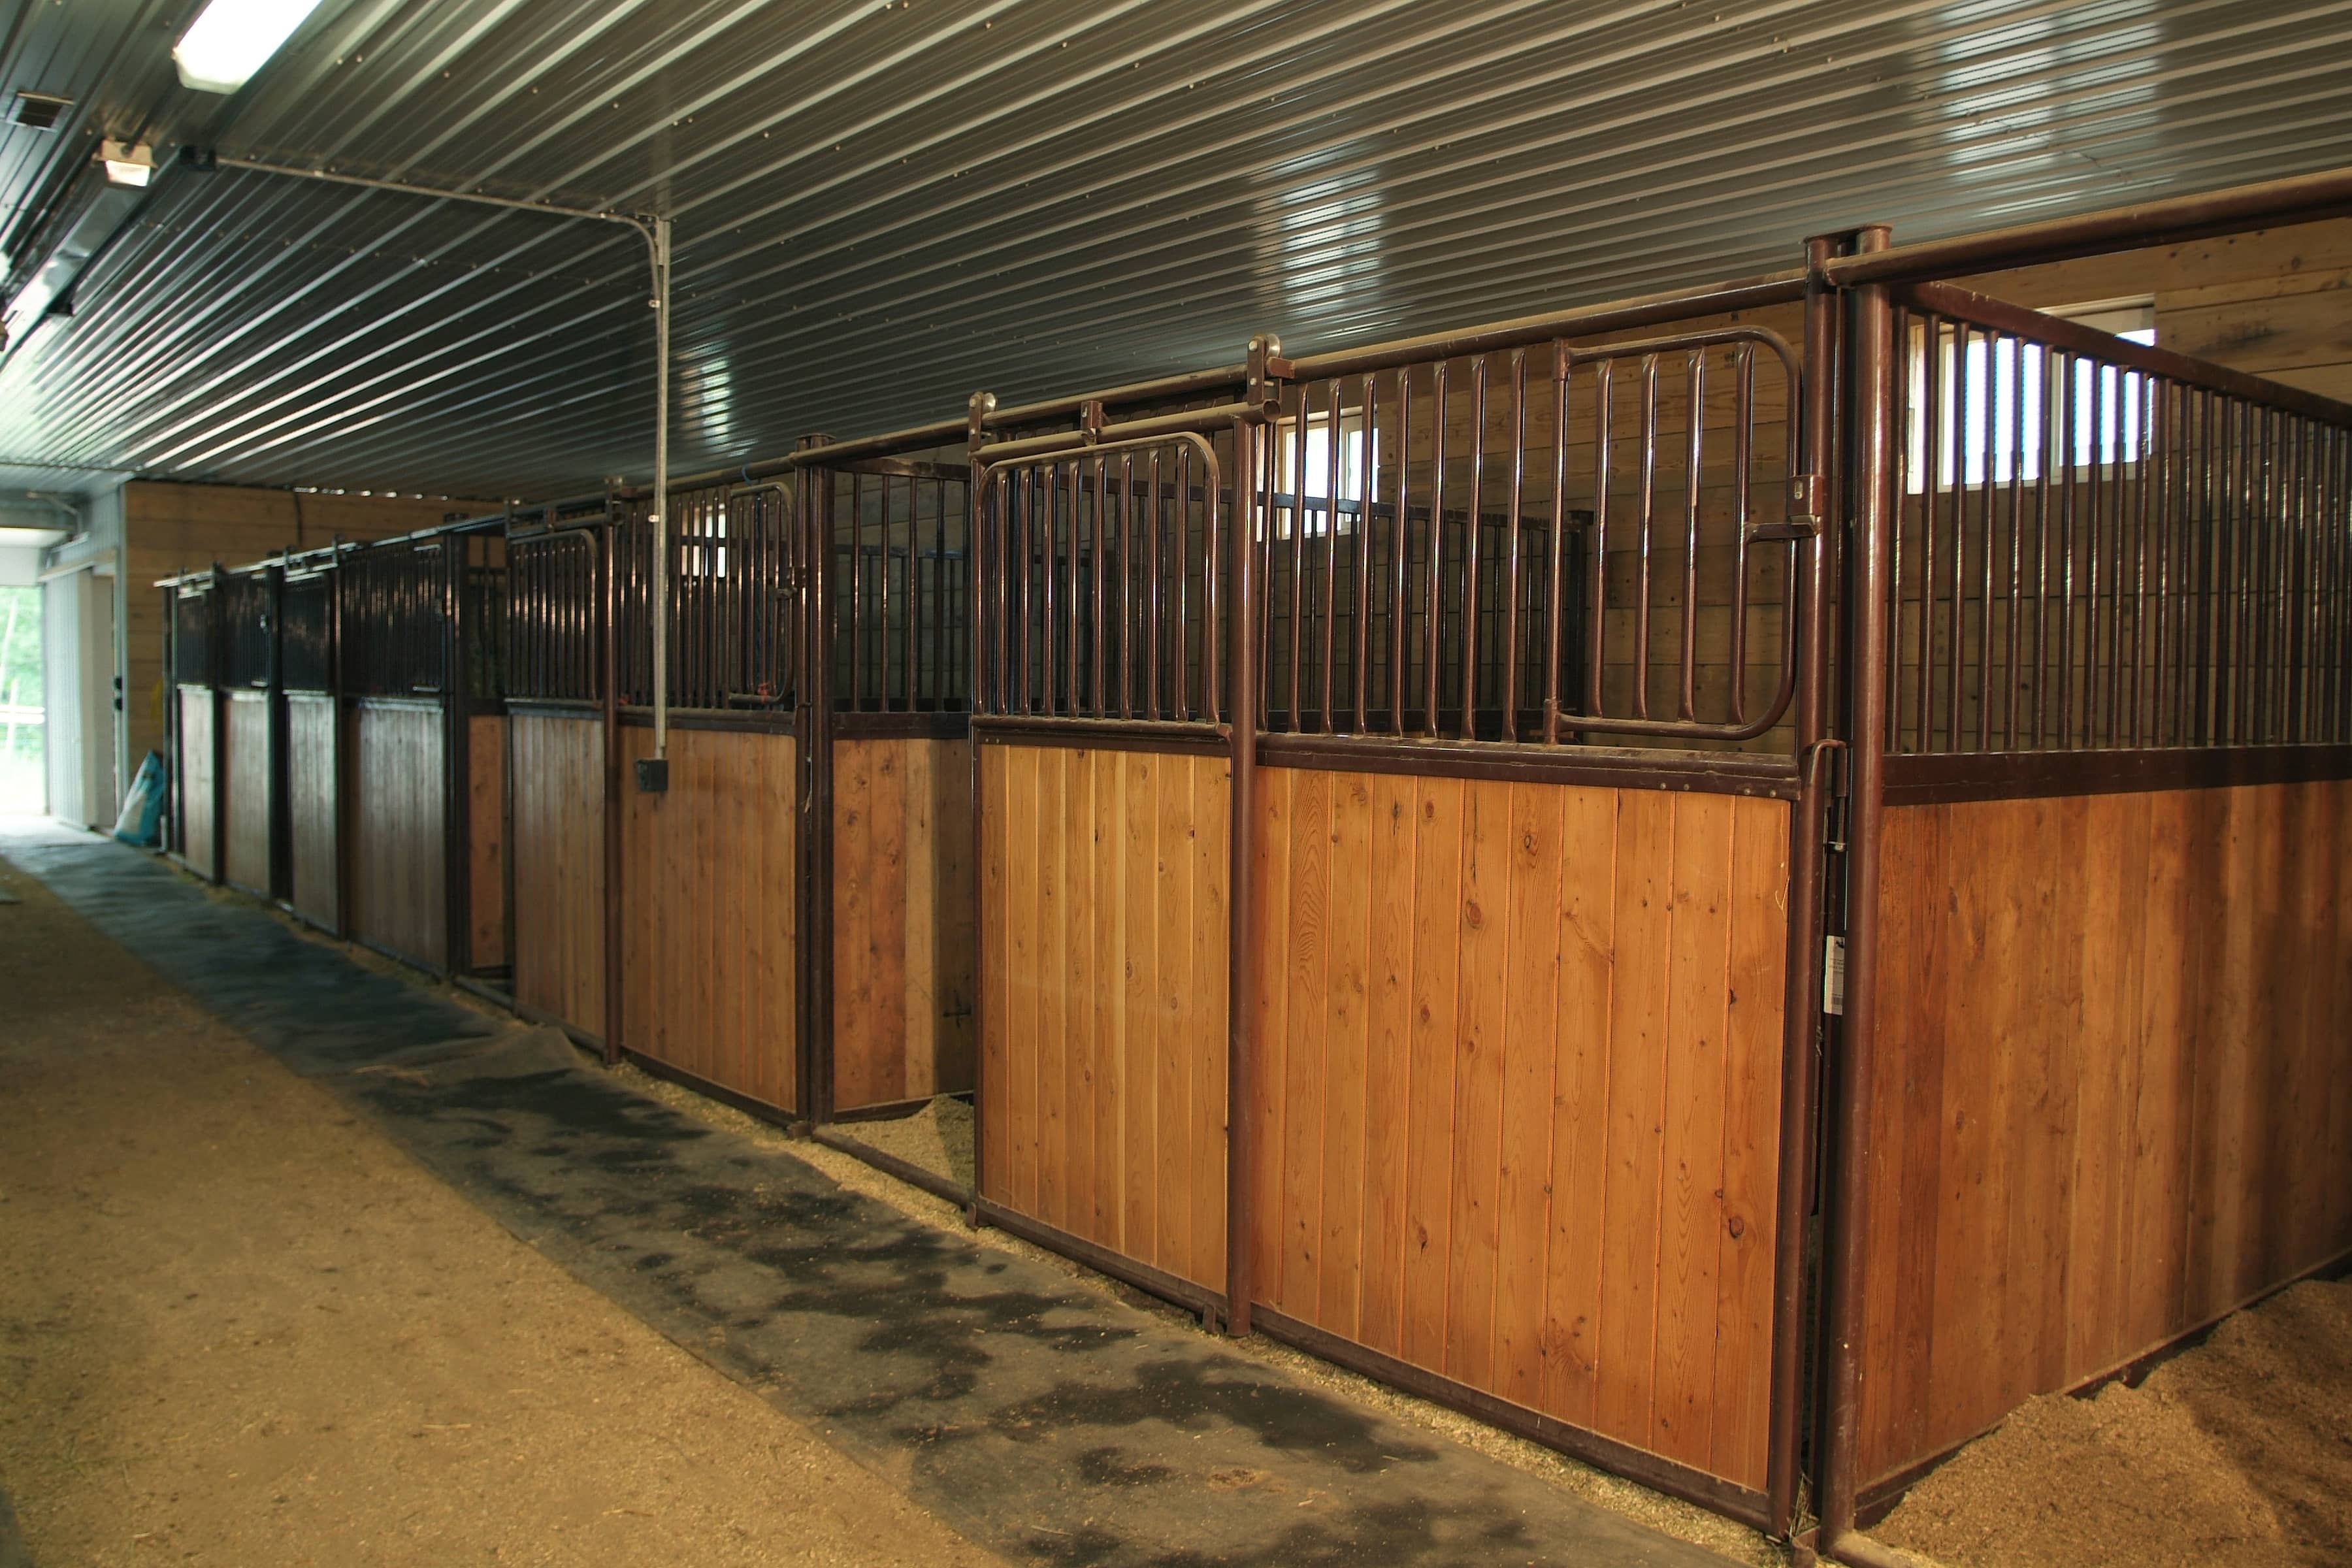 Horse arenas: Indoor riding & training facilities